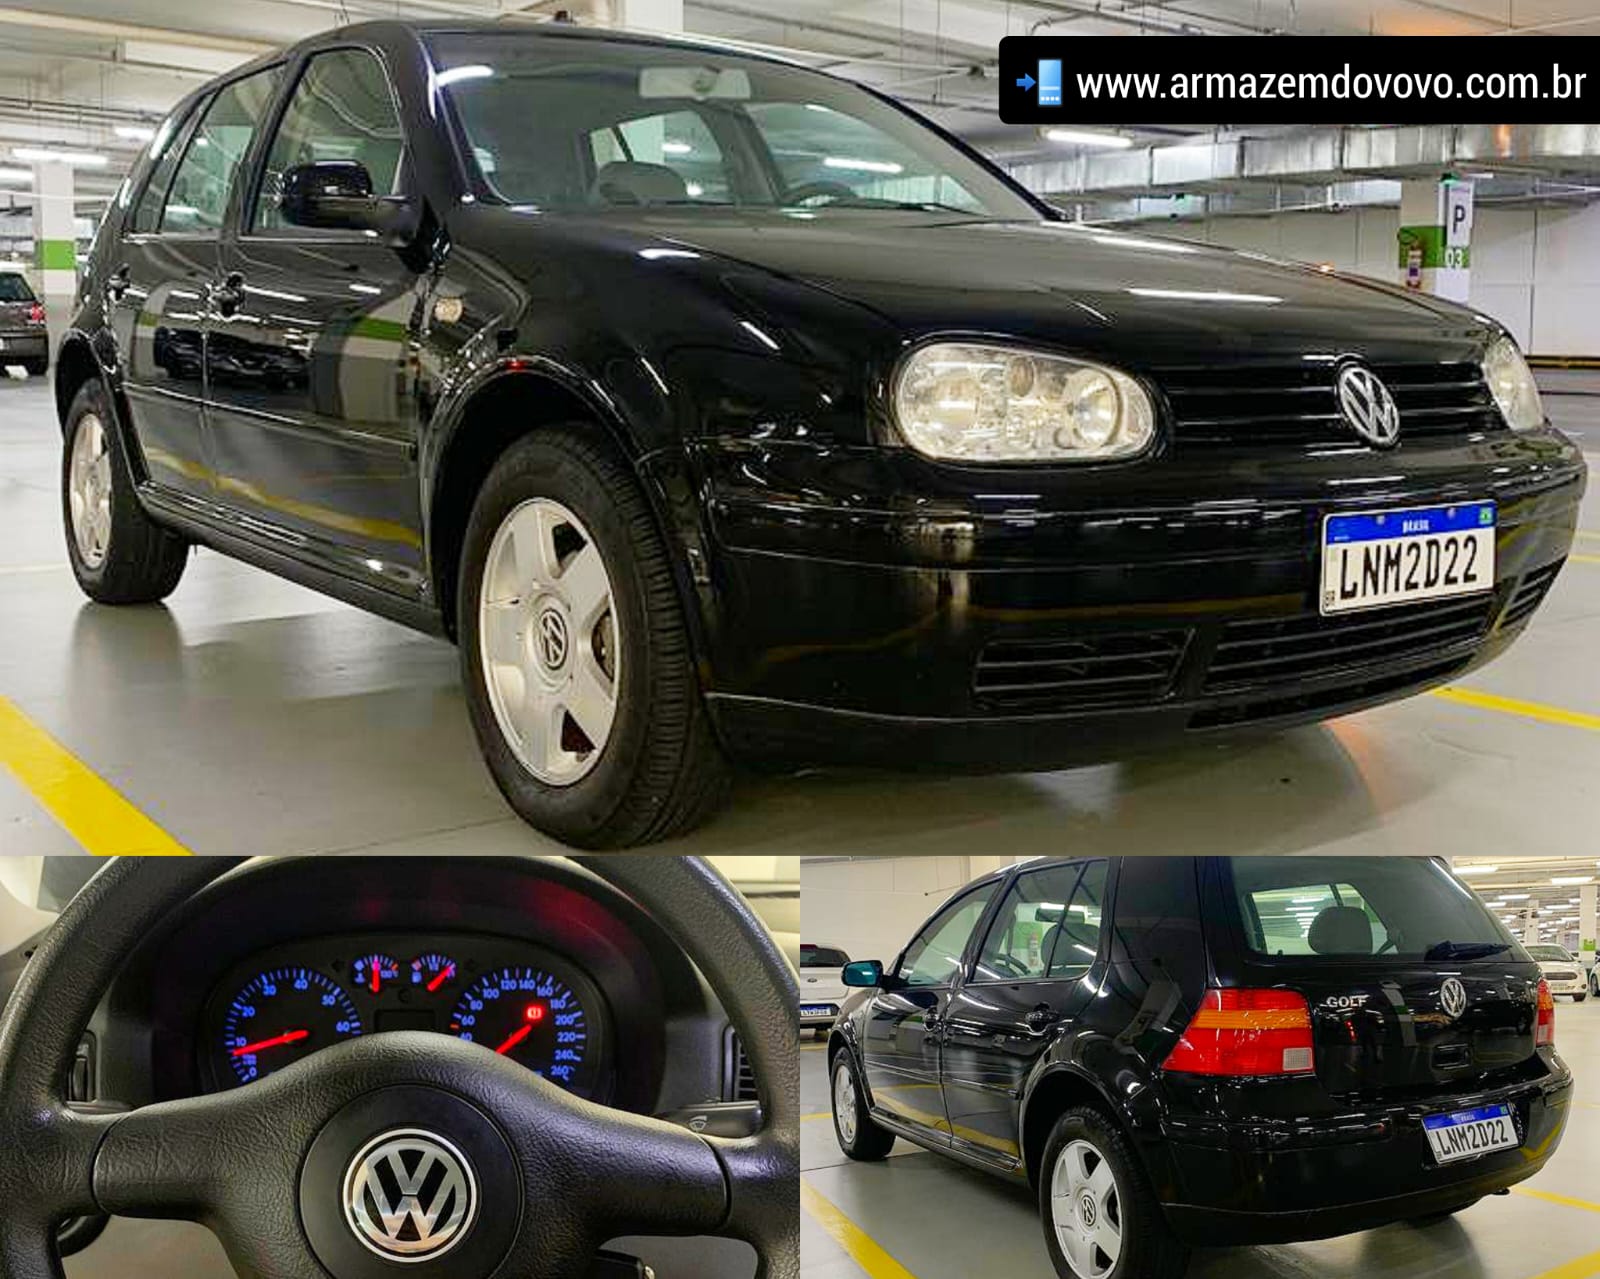 2002 Volkswagen 1-Litre Wallpapers